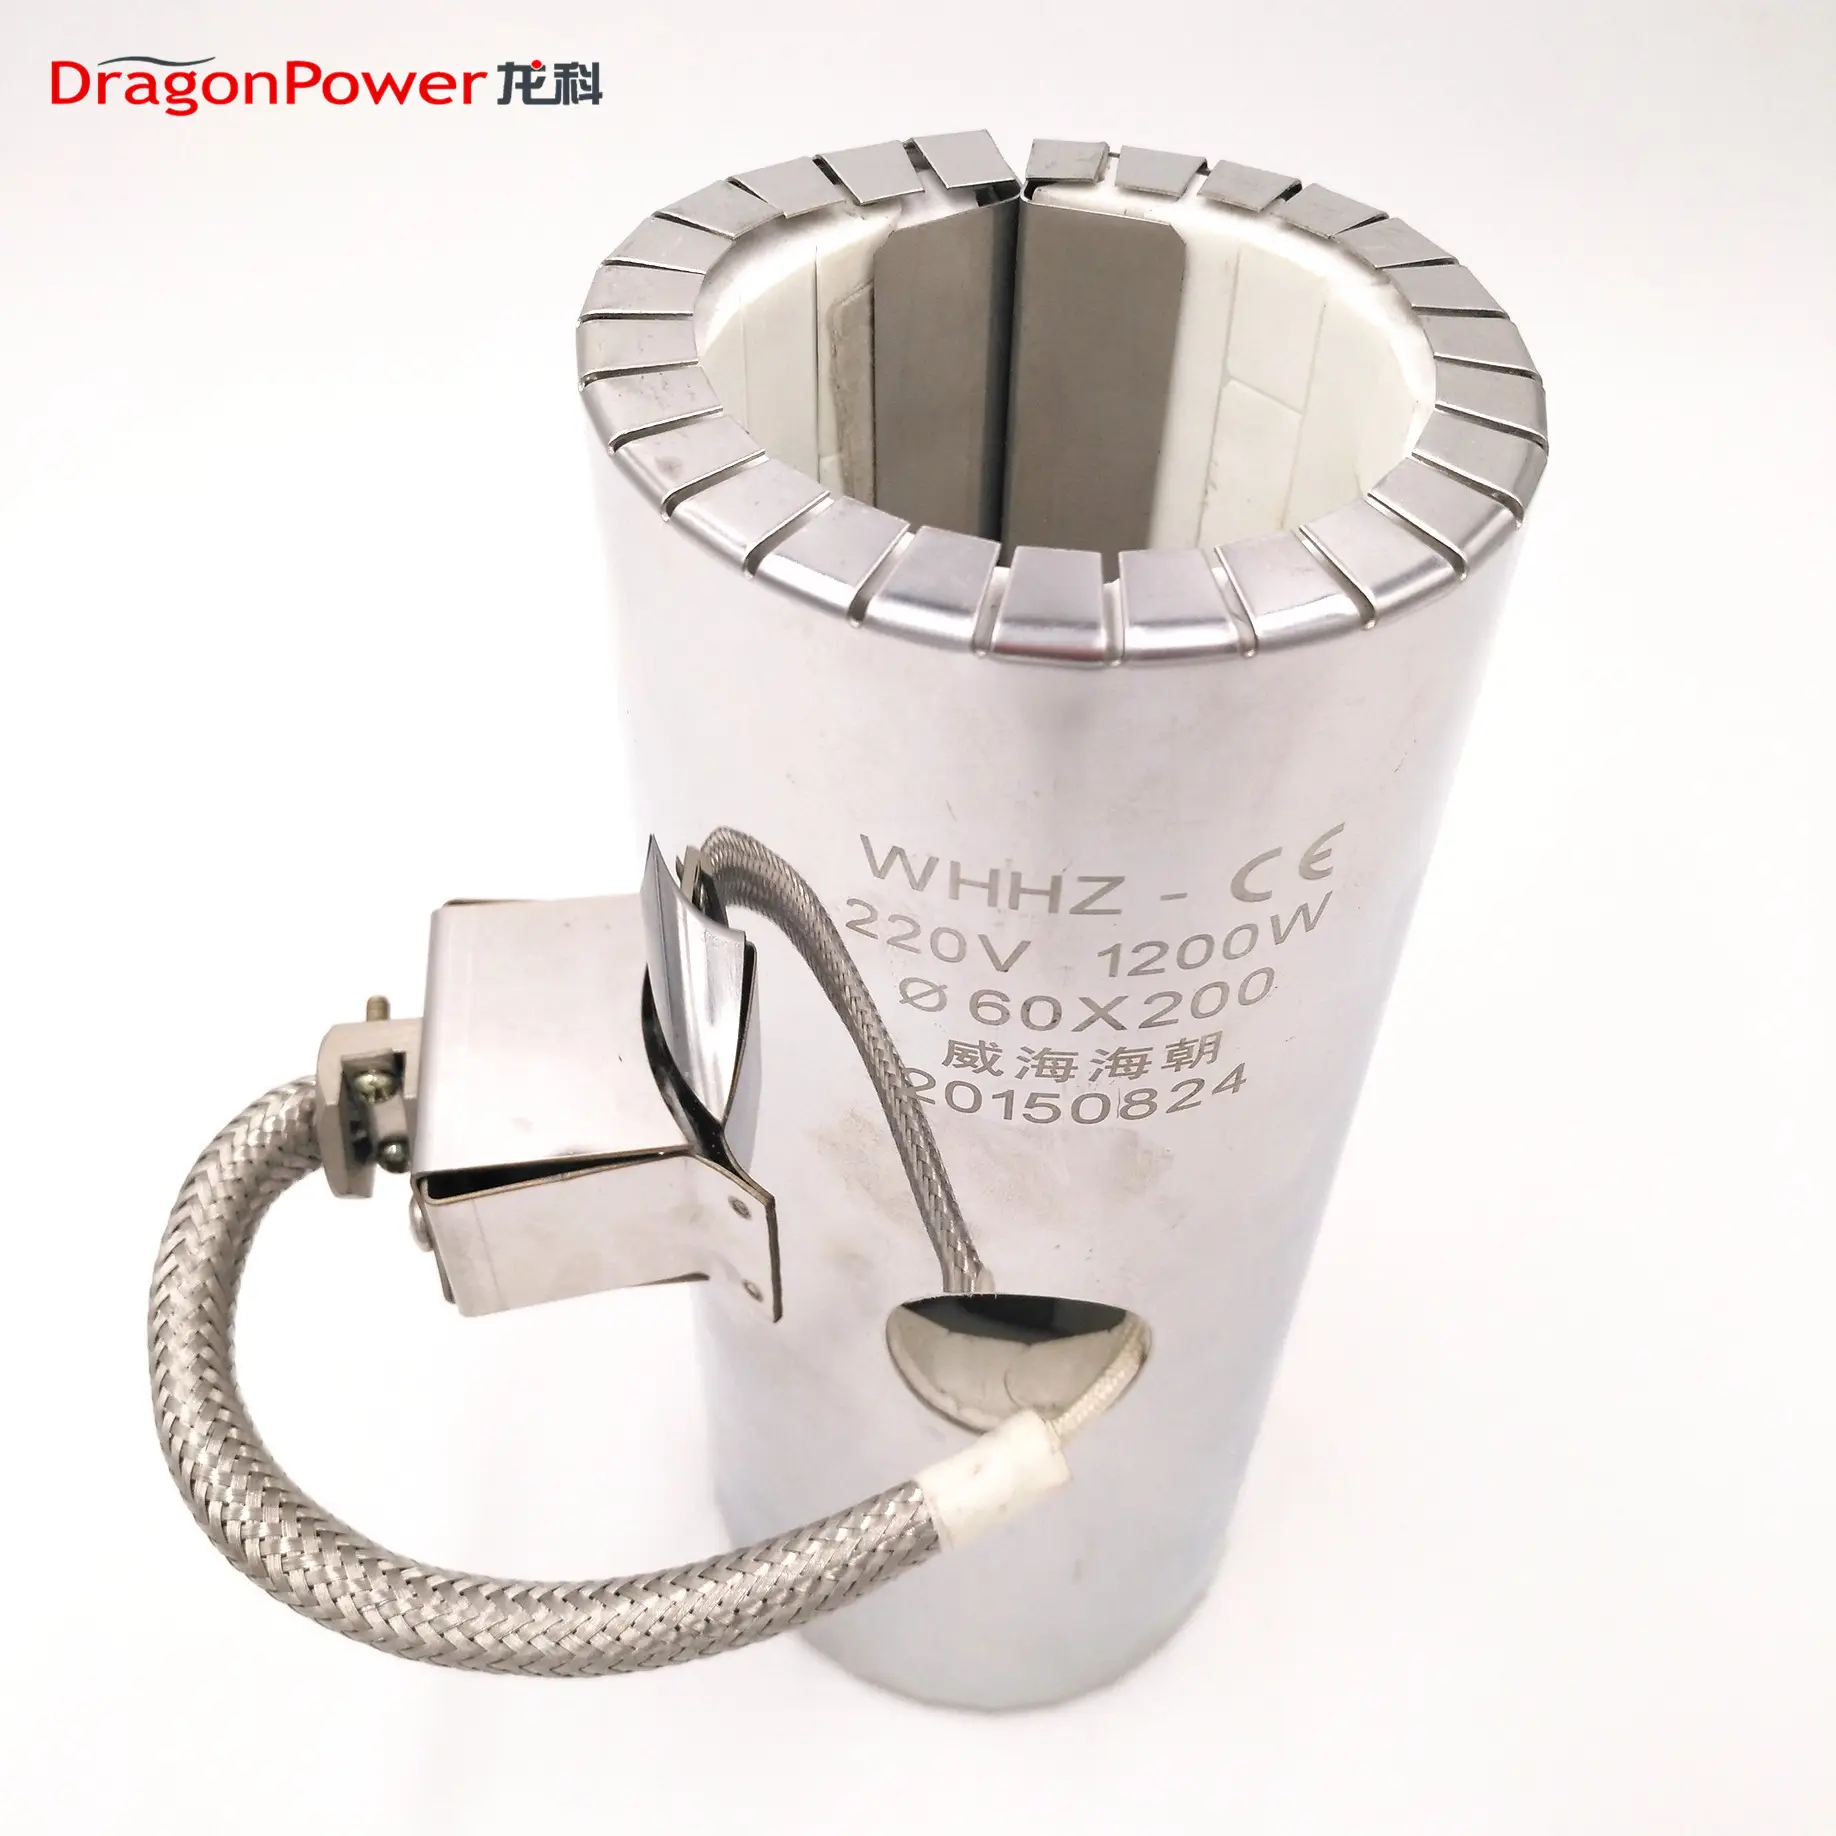 Calentador de cerámica DragonPower, calentador de cerámica circular para máquina de plástico